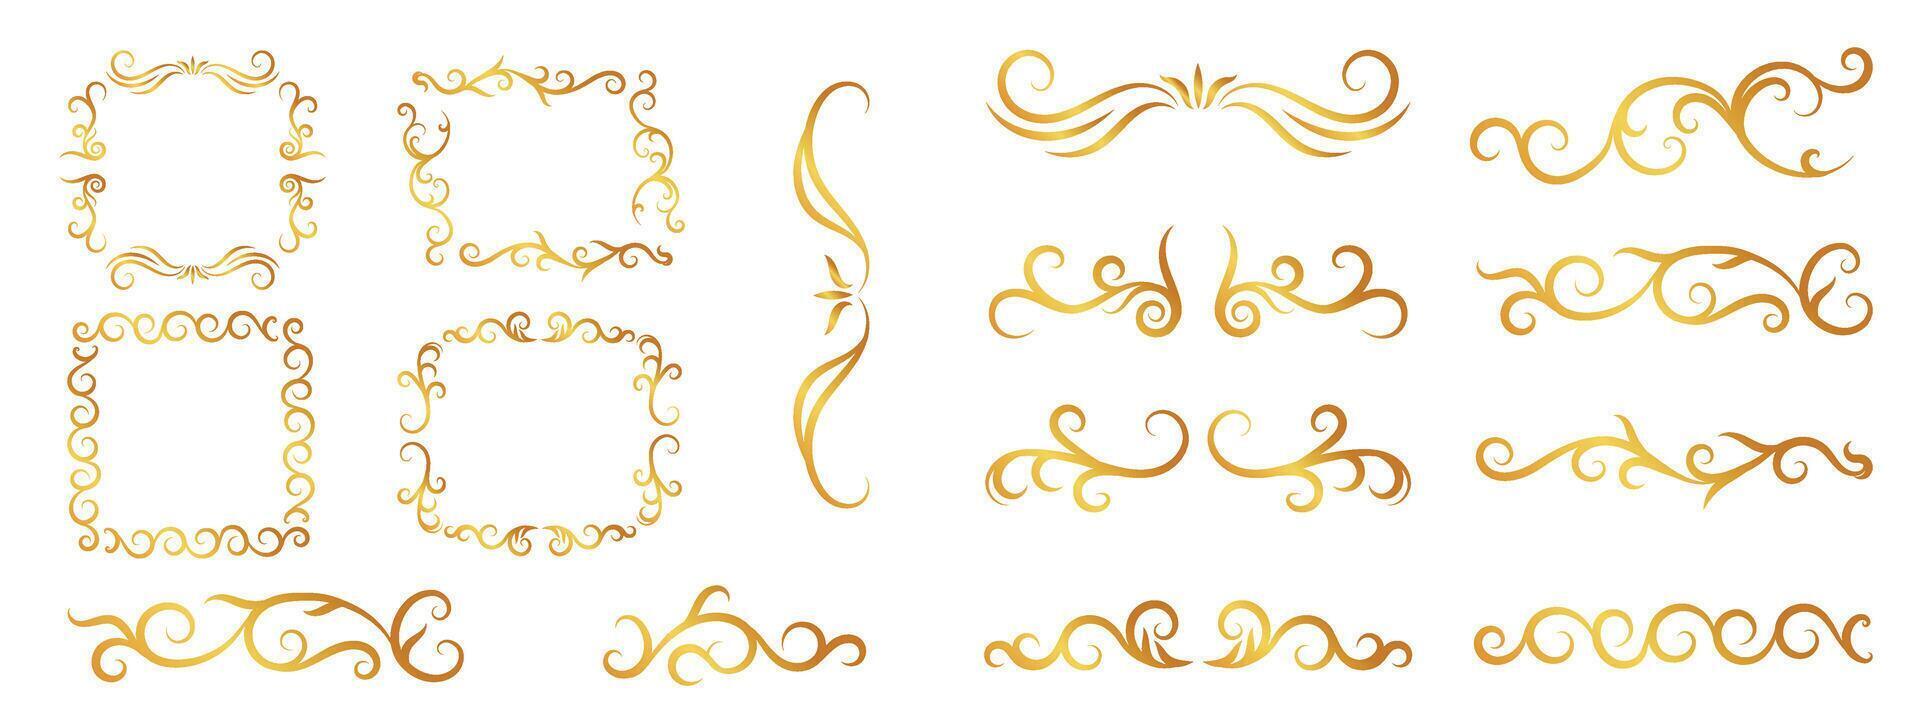 Luxury gold ornate invitation set. Collection of ornamental curls, dividers, border, frame, corner, components. Set of elegant design for wedding, menus, certificates, logo design, branding. vector